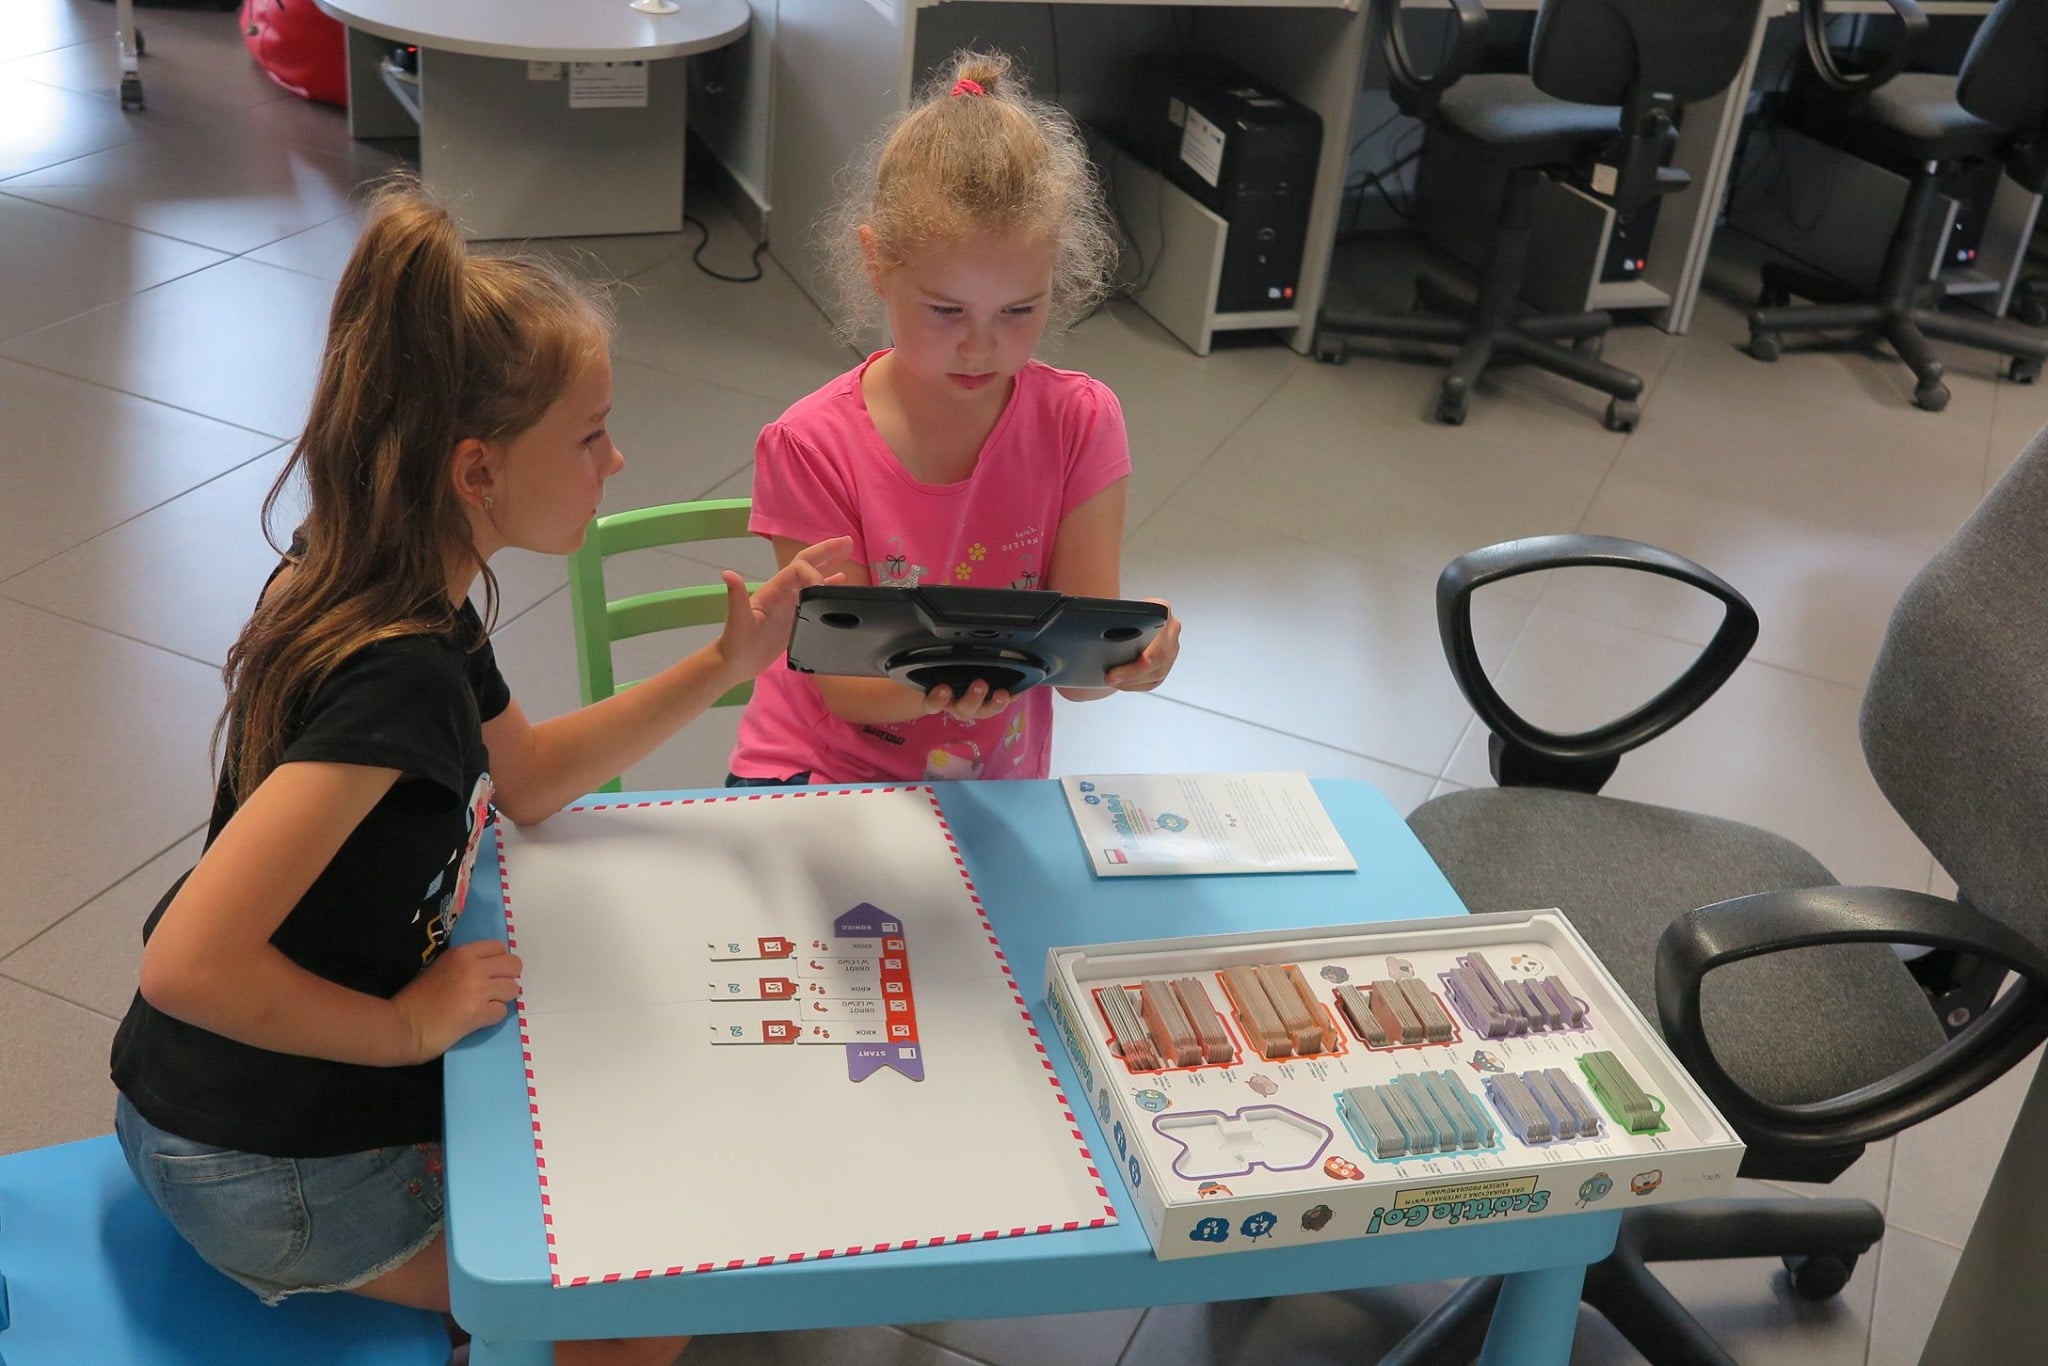 Wnętrze biblioteki,mediateka. Przy stoliku dwie dziewczynki grają w grę z programowania ''Scottie Go''.